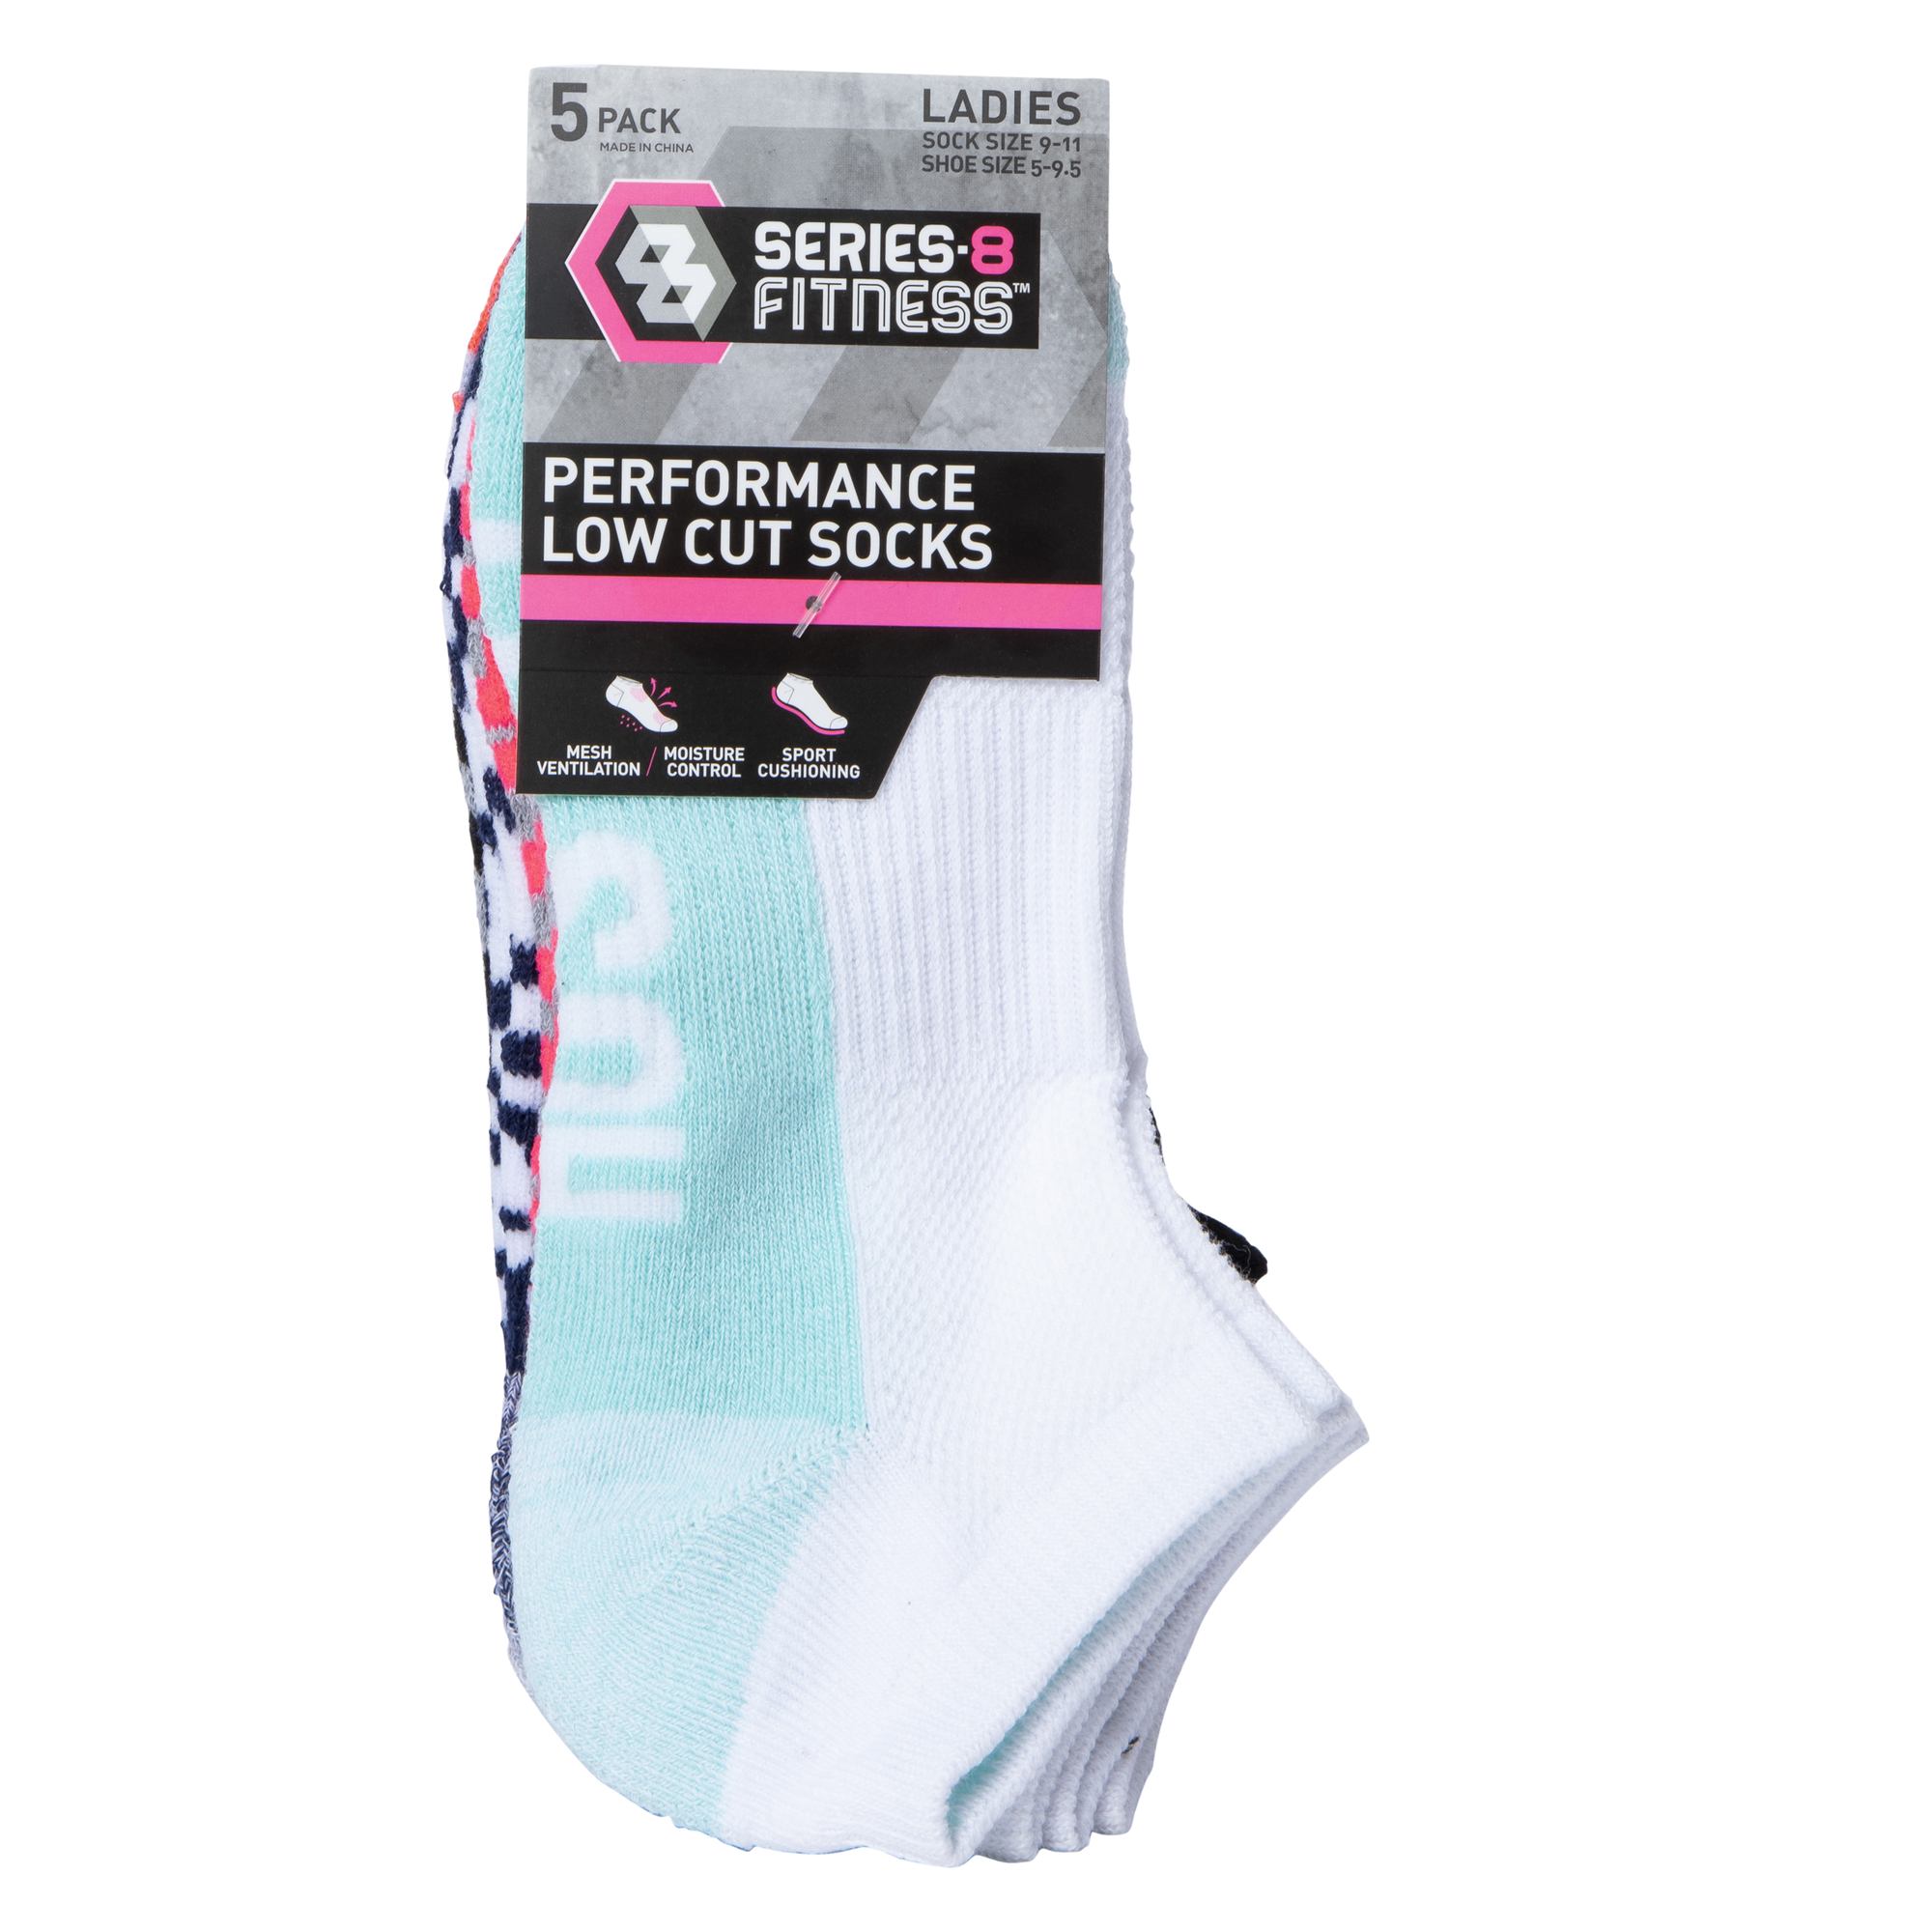 series-8 fitness™ ladies low-cut socks 5-pack